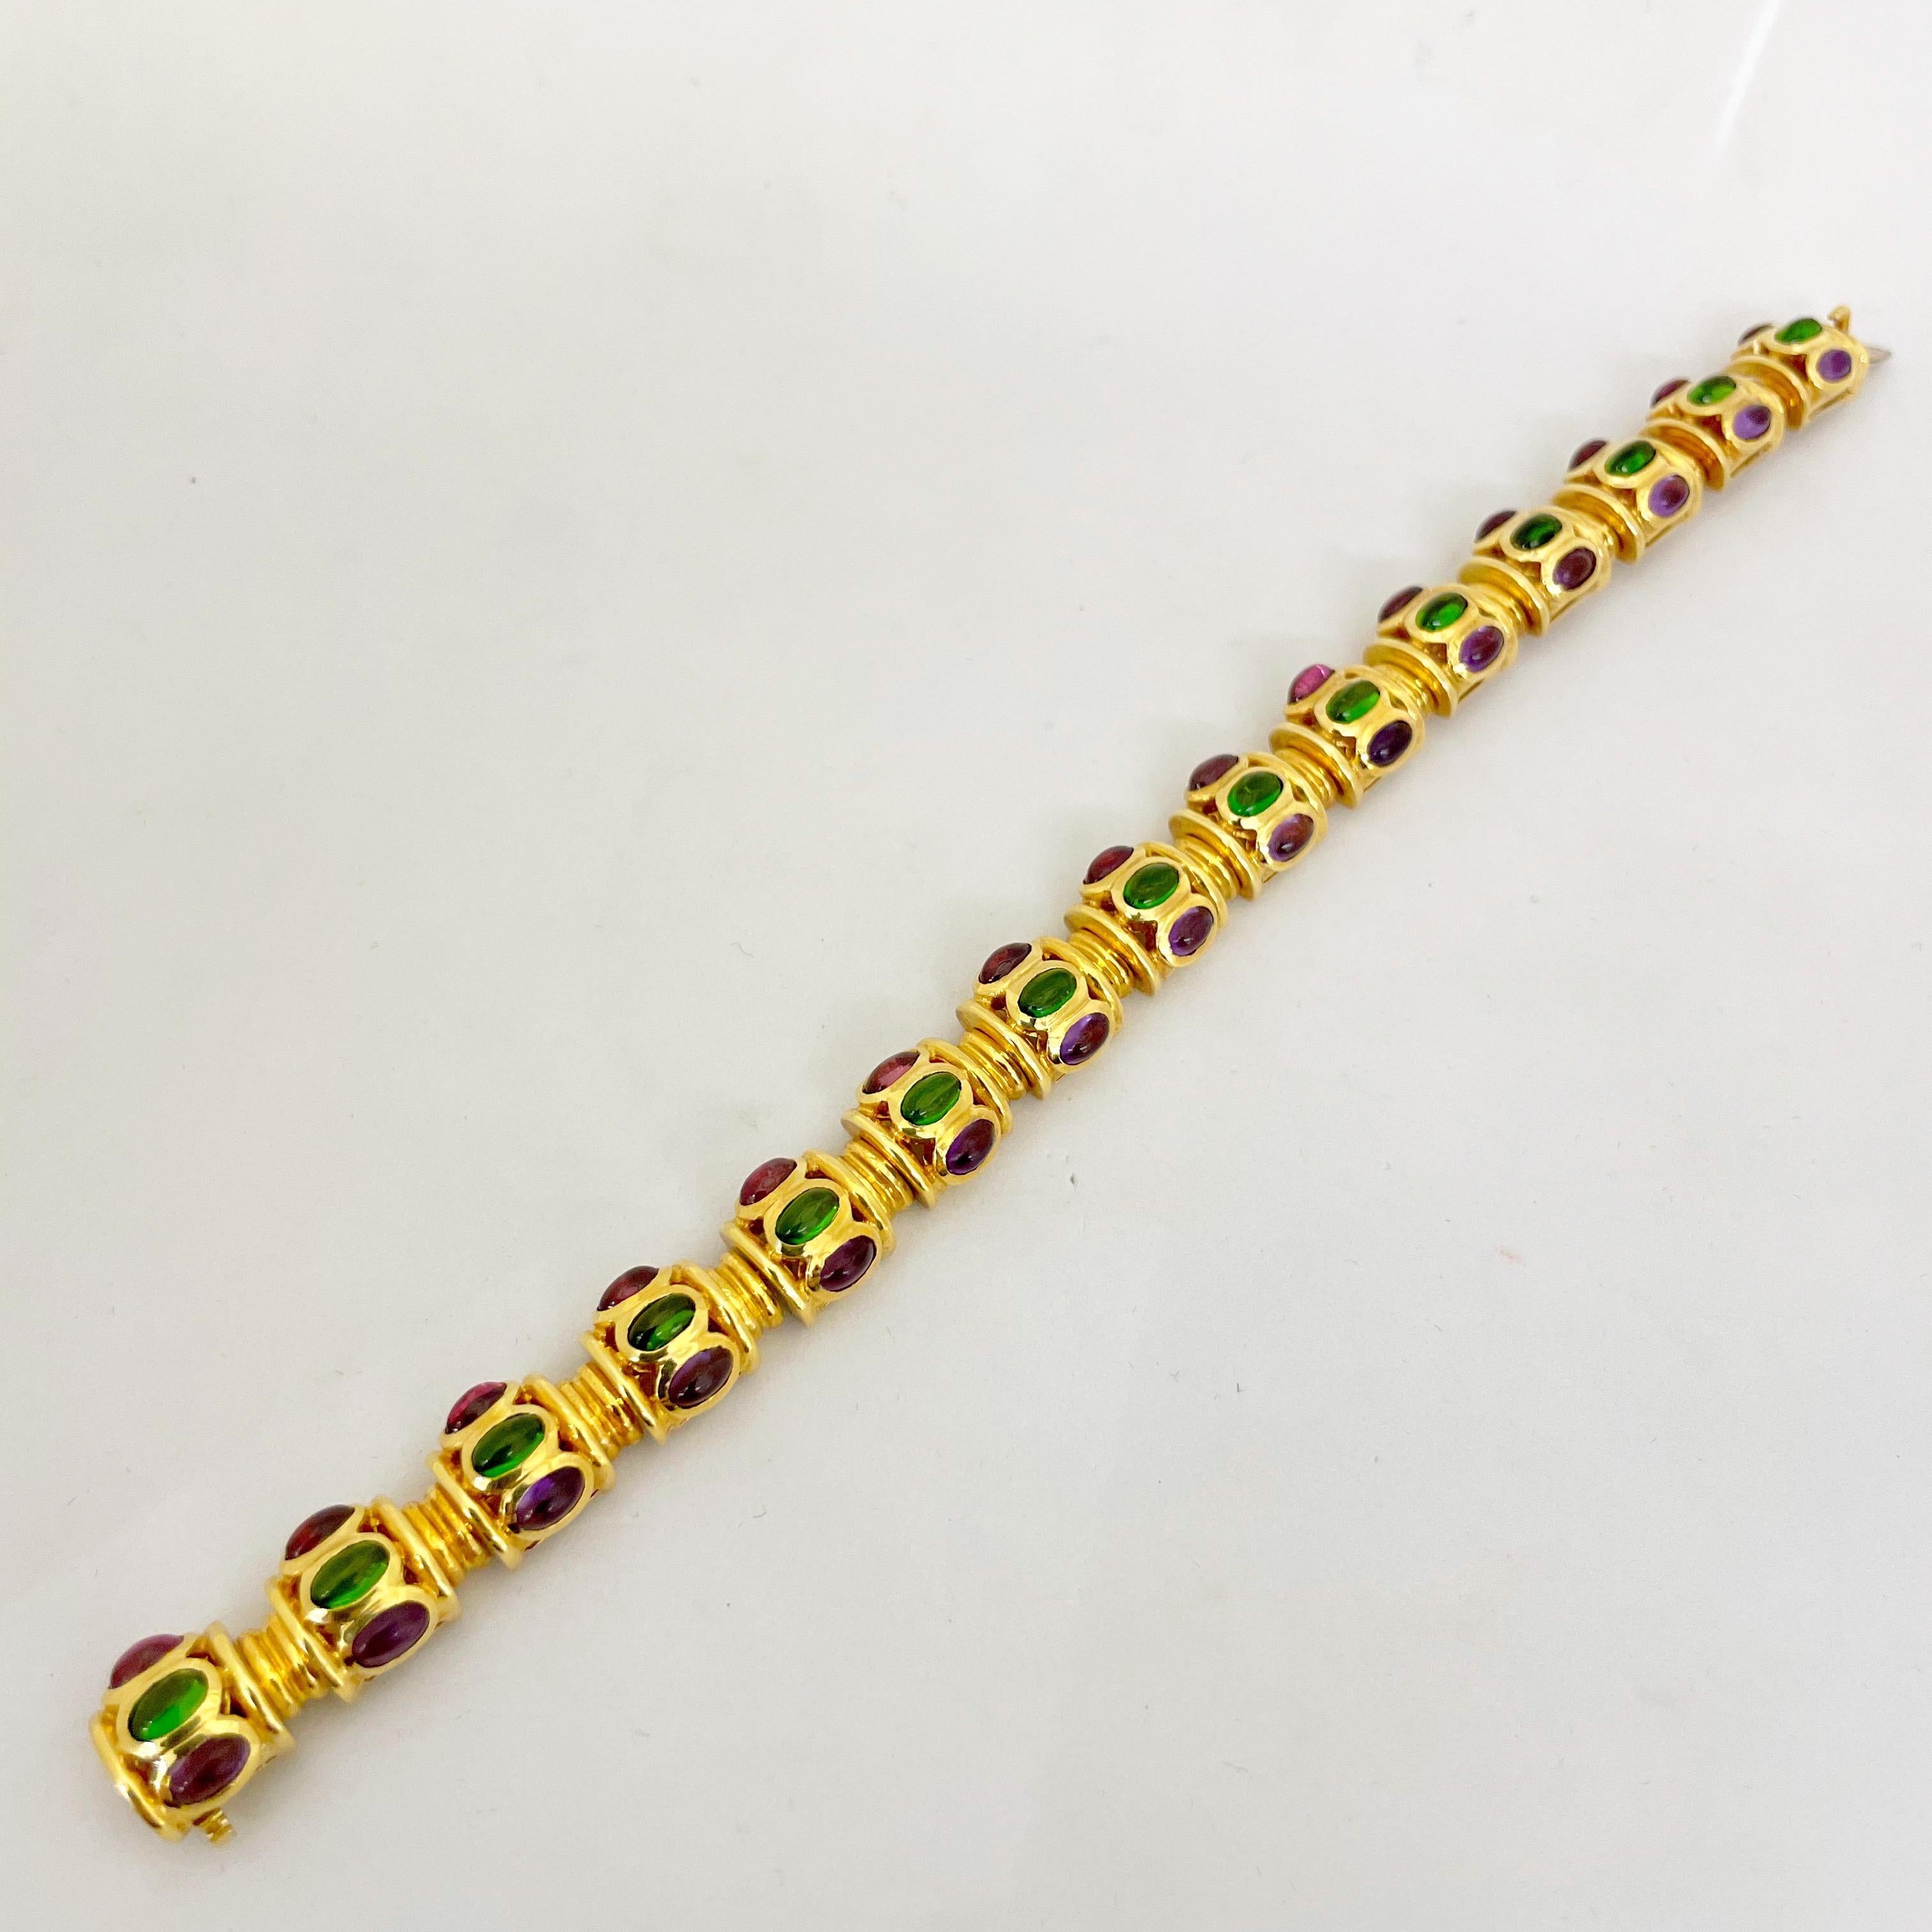 Ein wunderschön gestaltetes Gliederarmband aus 18 Karat Gelbgold. Das Armband besteht aus 15 tonnenförmigen Gliedern, die jeweils mit ovalen Cabochons aus Amethyst, Diopsid und Rhodoit besetzt sind. Wenn das 7-1/8